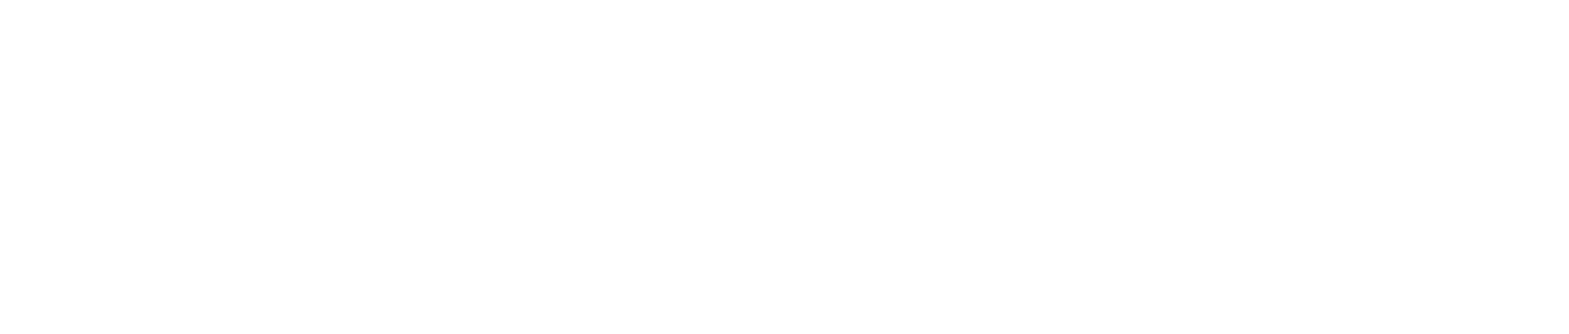 Pilbara Minerals logo large for dark backgrounds (transparent PNG)